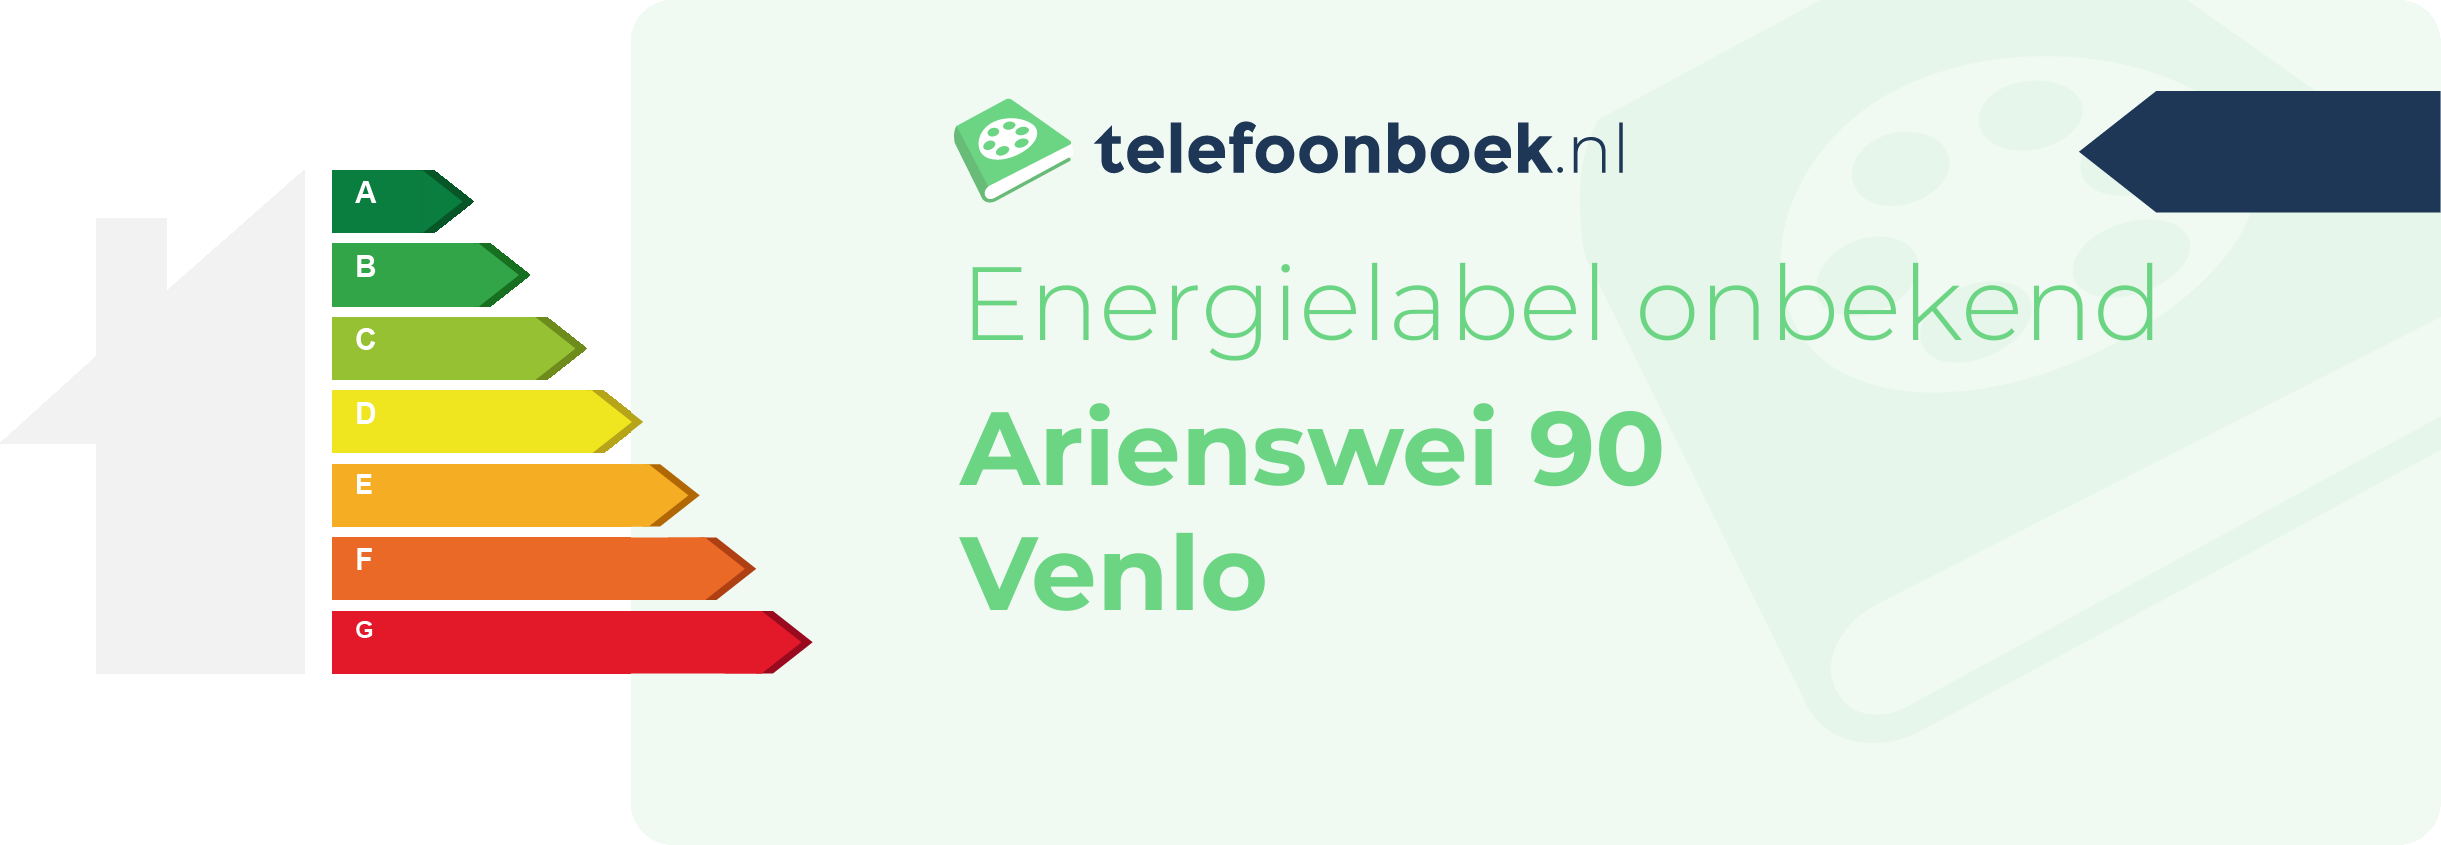 Energielabel Arienswei 90 Venlo